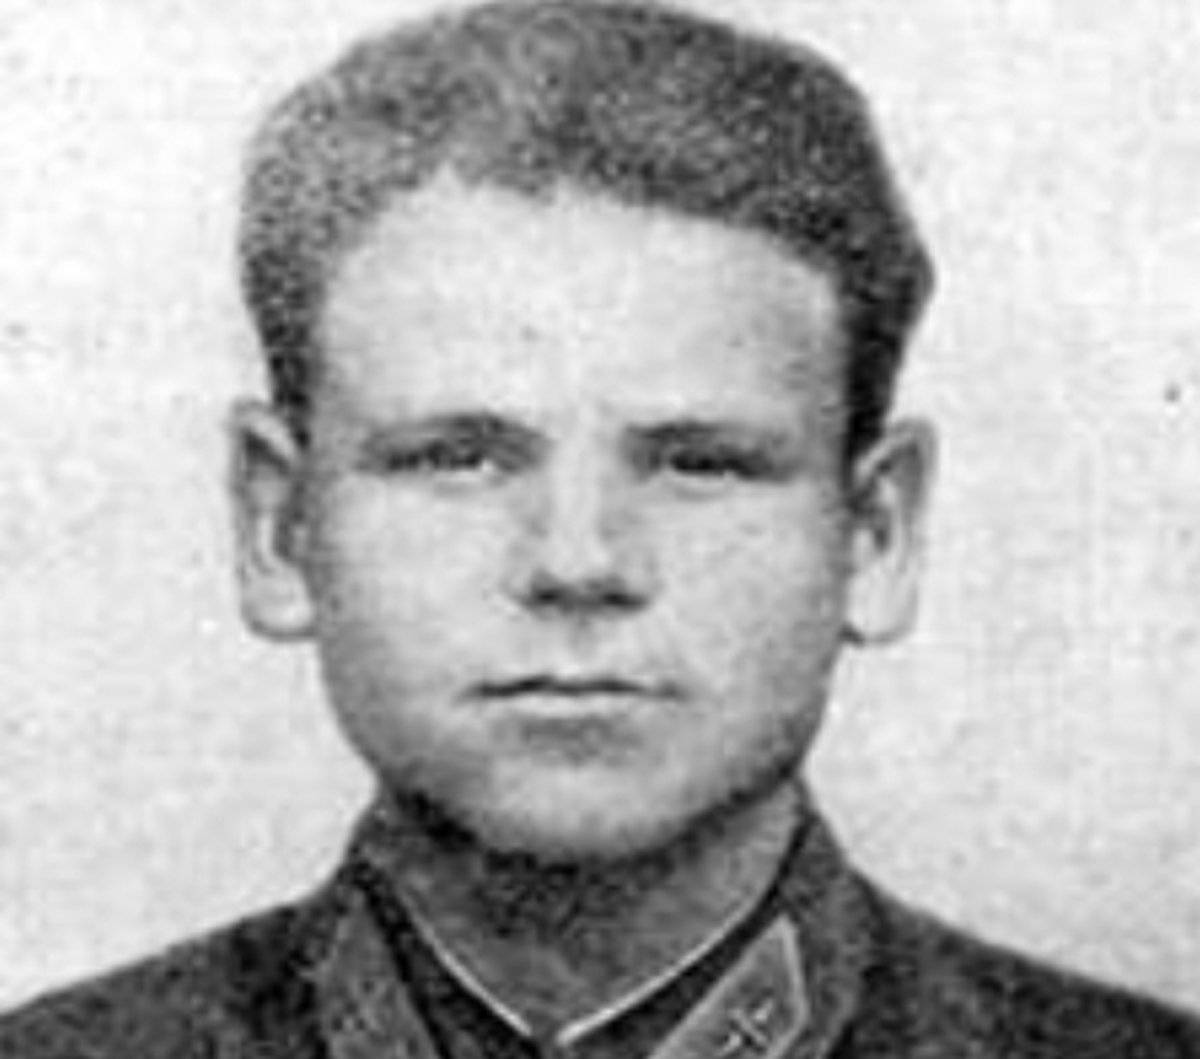 В 1941 году Луке Муравицкому присвоили звание Героя Советского Союза.